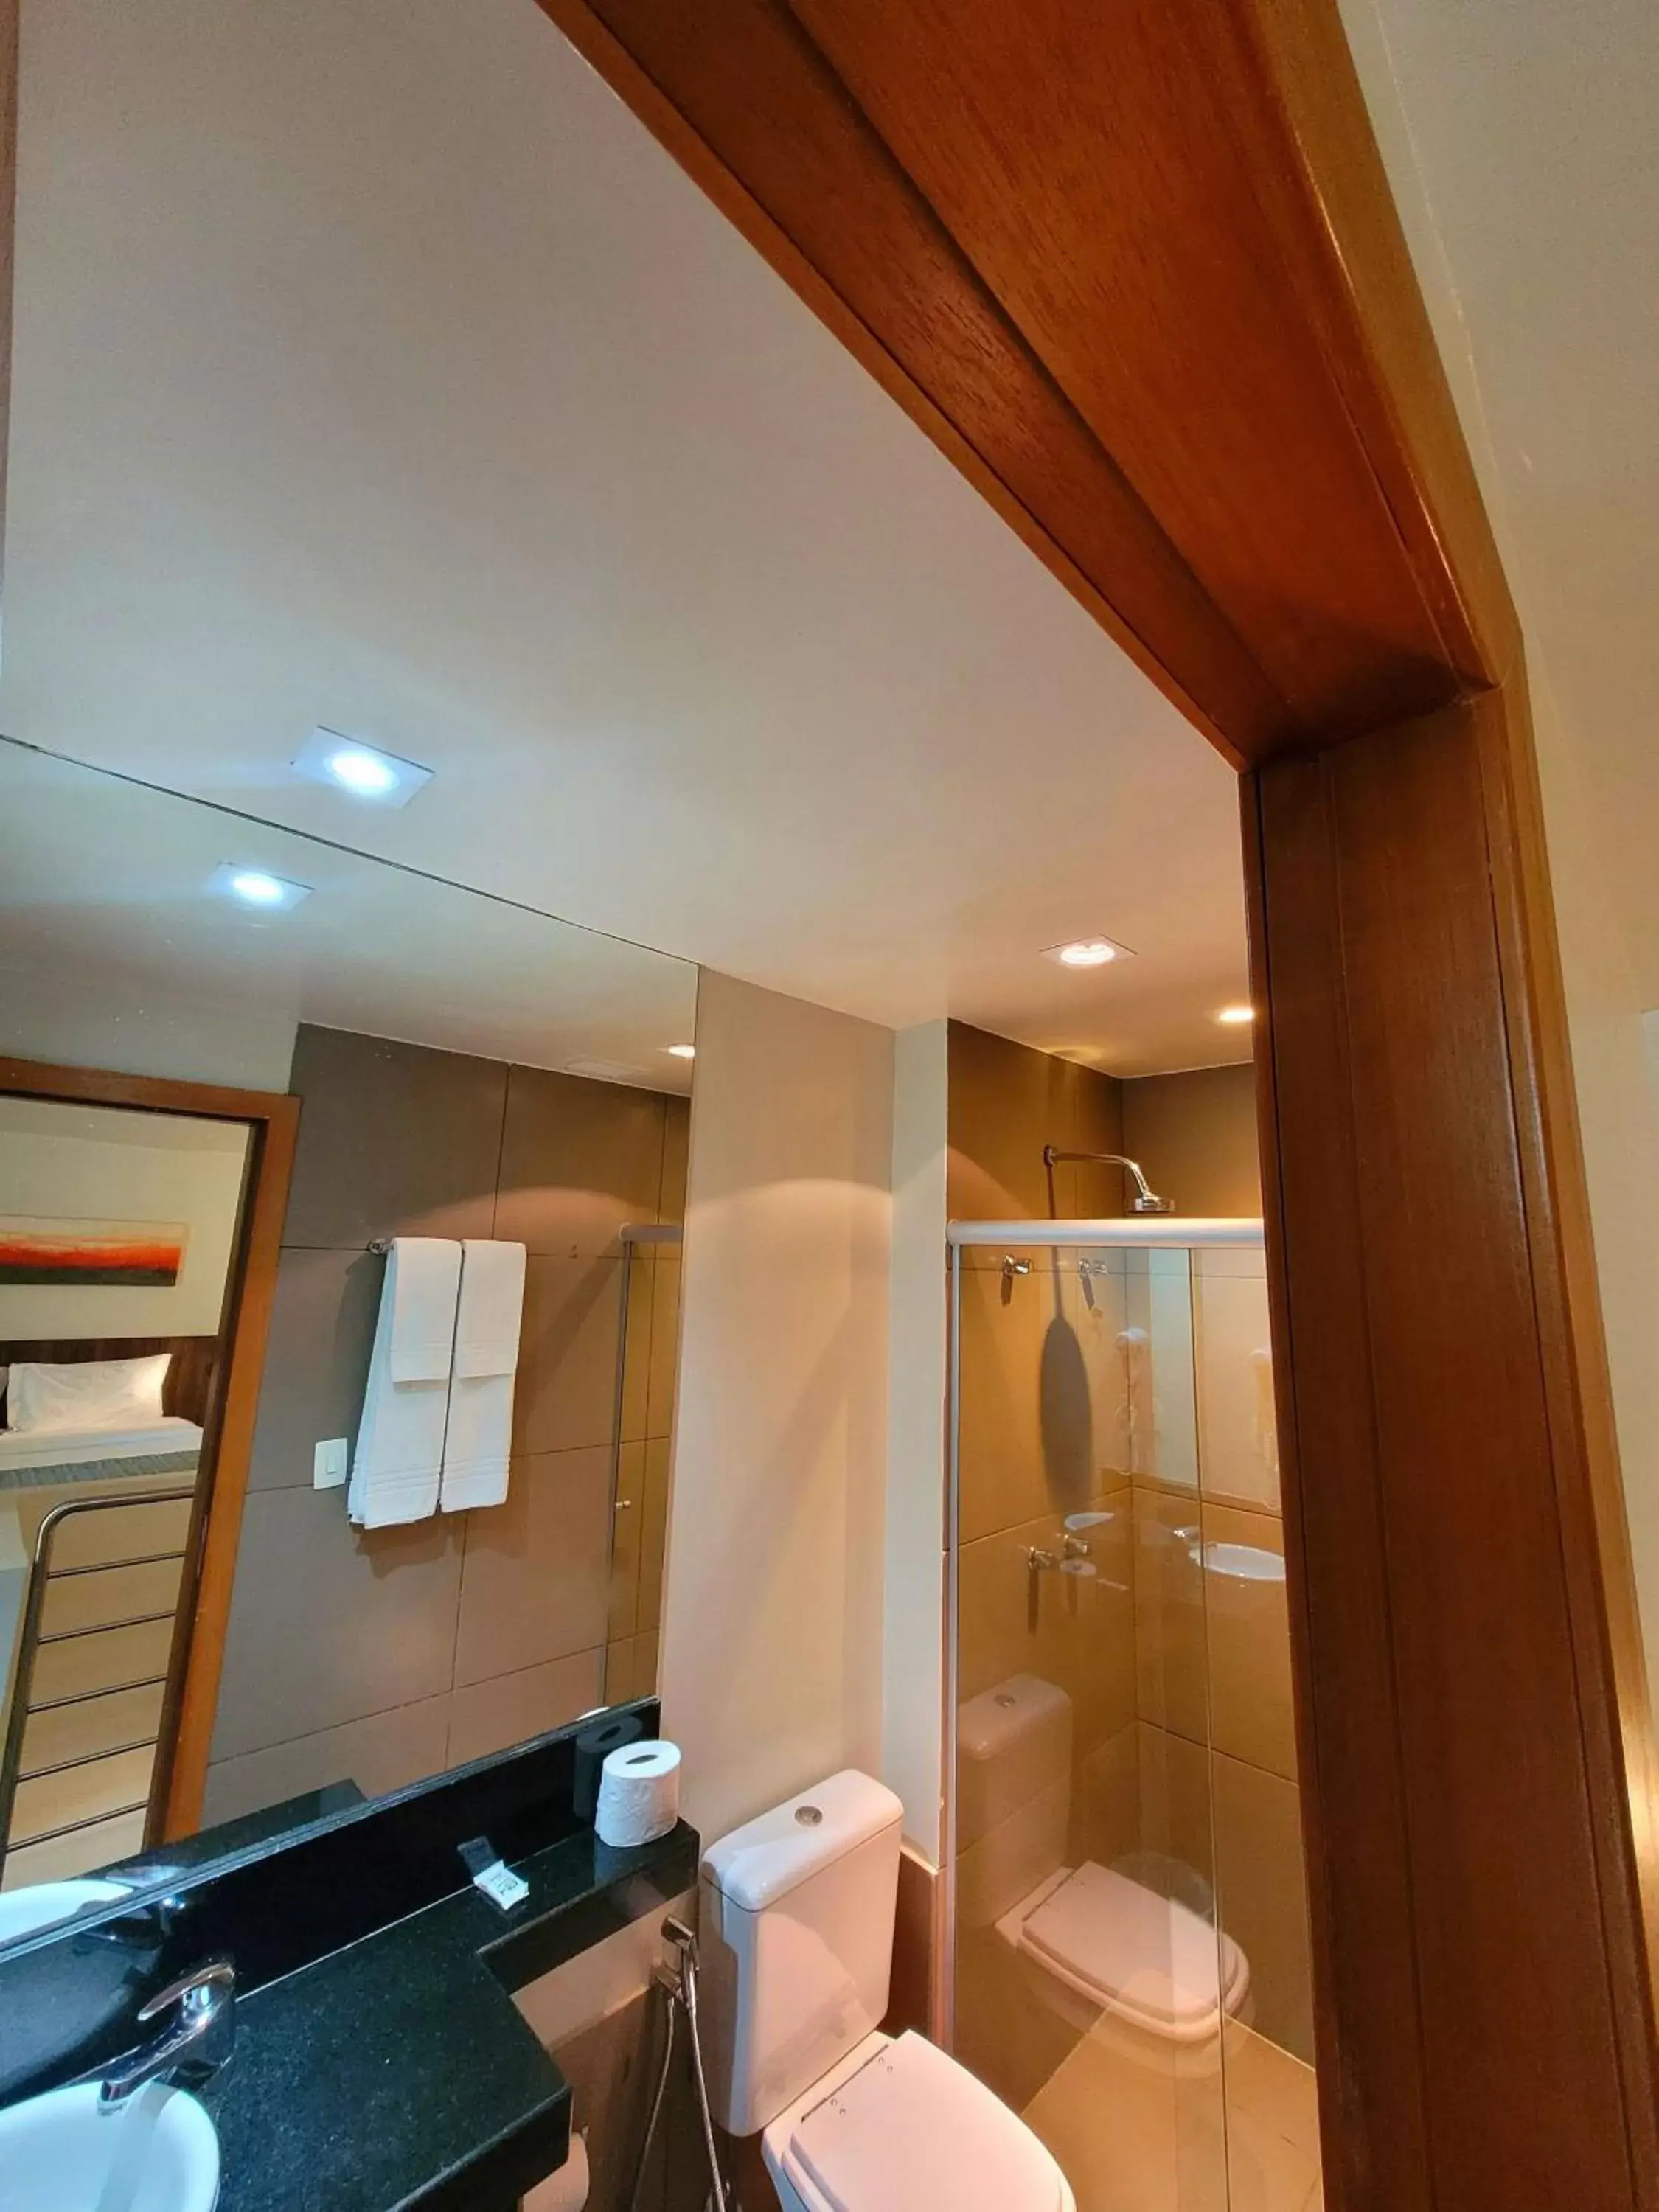 Bathroom in BH Raja Hotel